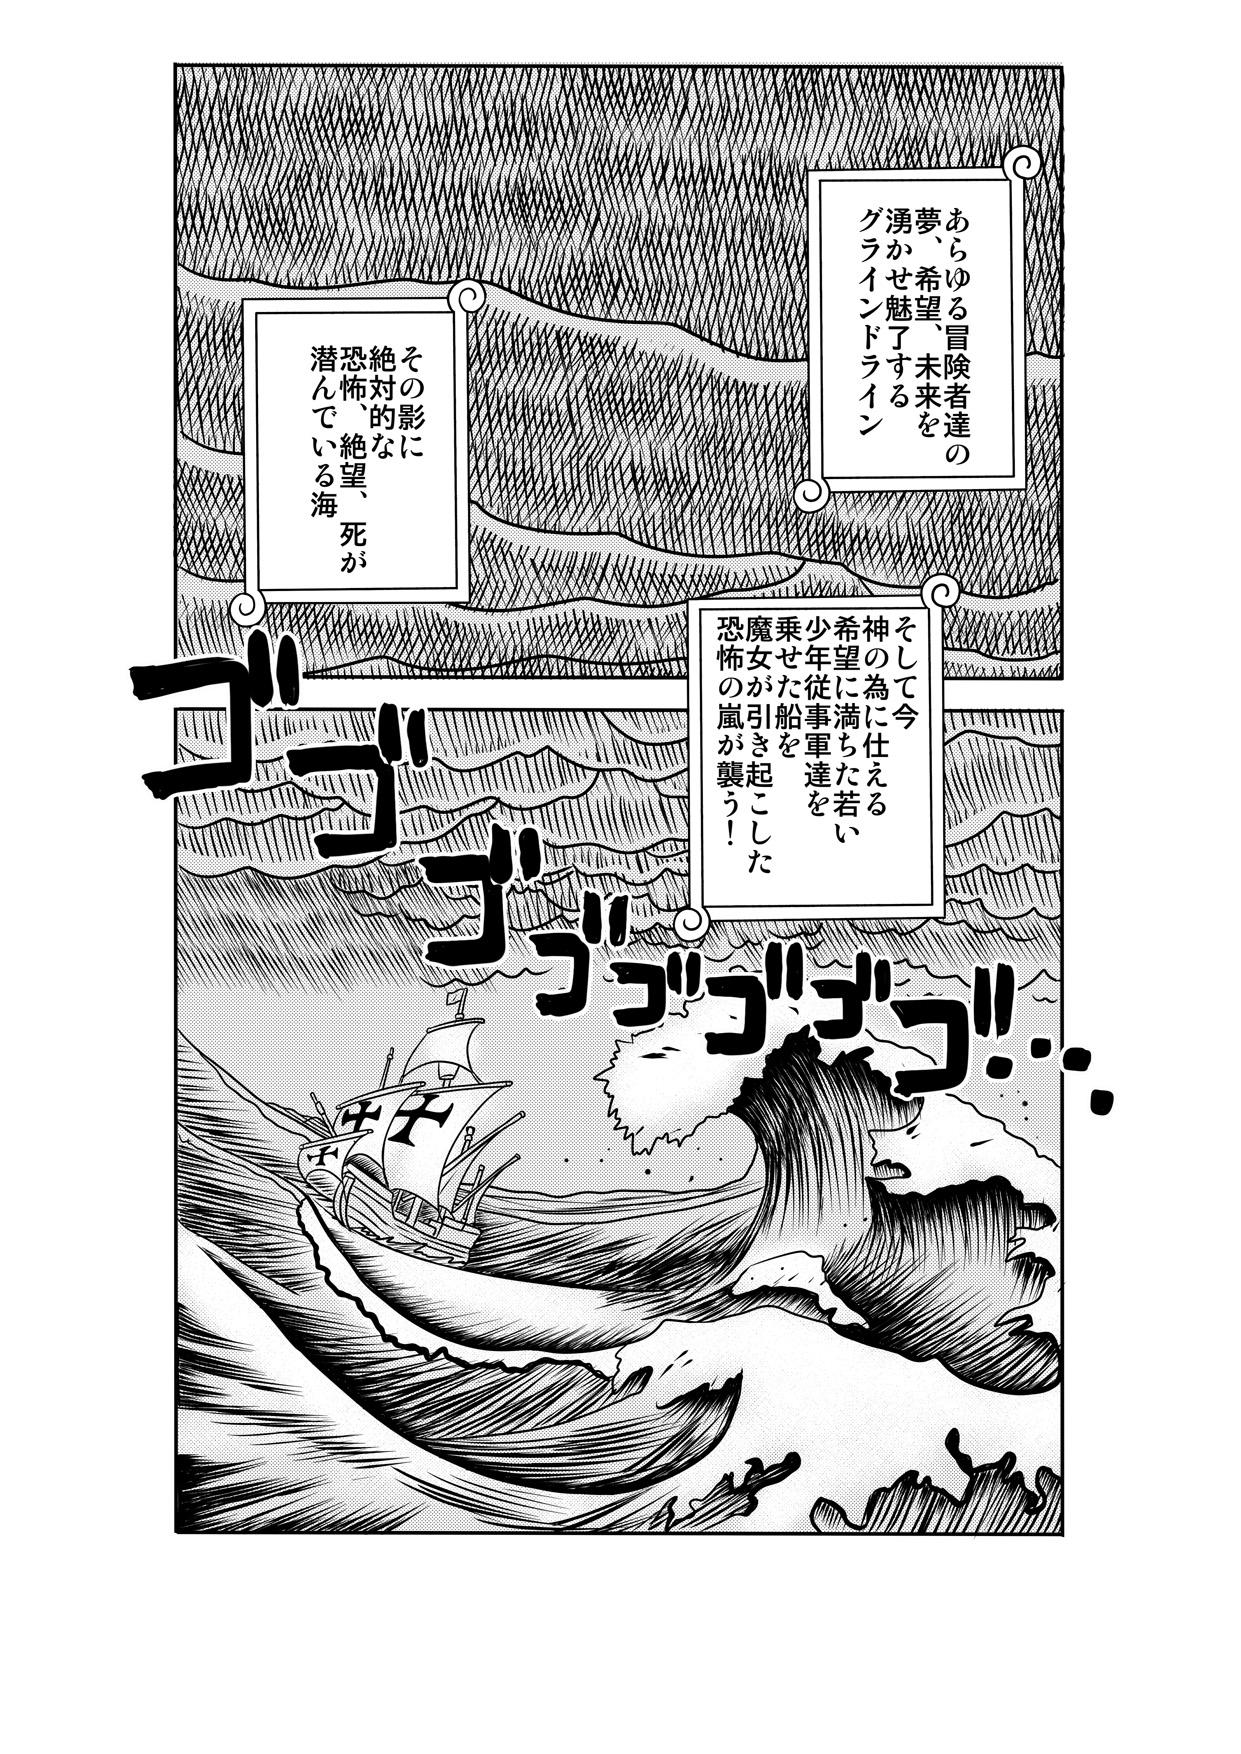 Salope "Nukinuki no Mi" no Nouryokusha 2 - Seishounen Juujigun Hen - One piece Home - Page 2